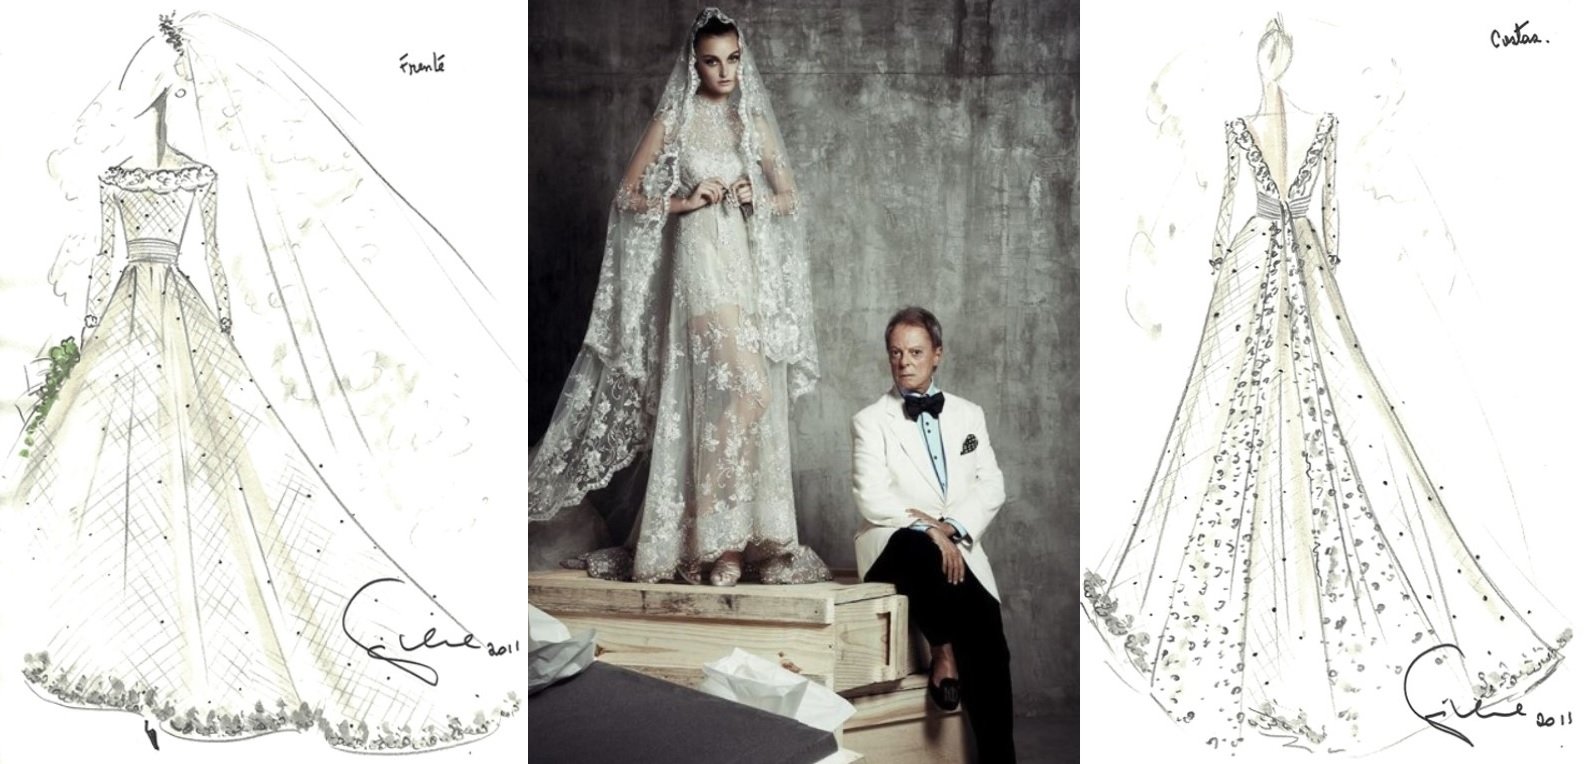 Croquis de um vestido noiva de Guilherme Guimarães de 2011 feitos para um concursos de vestidos para o casamento de Kate Middleton e uma foto do estilista posando com uma modelo vestida de noiva